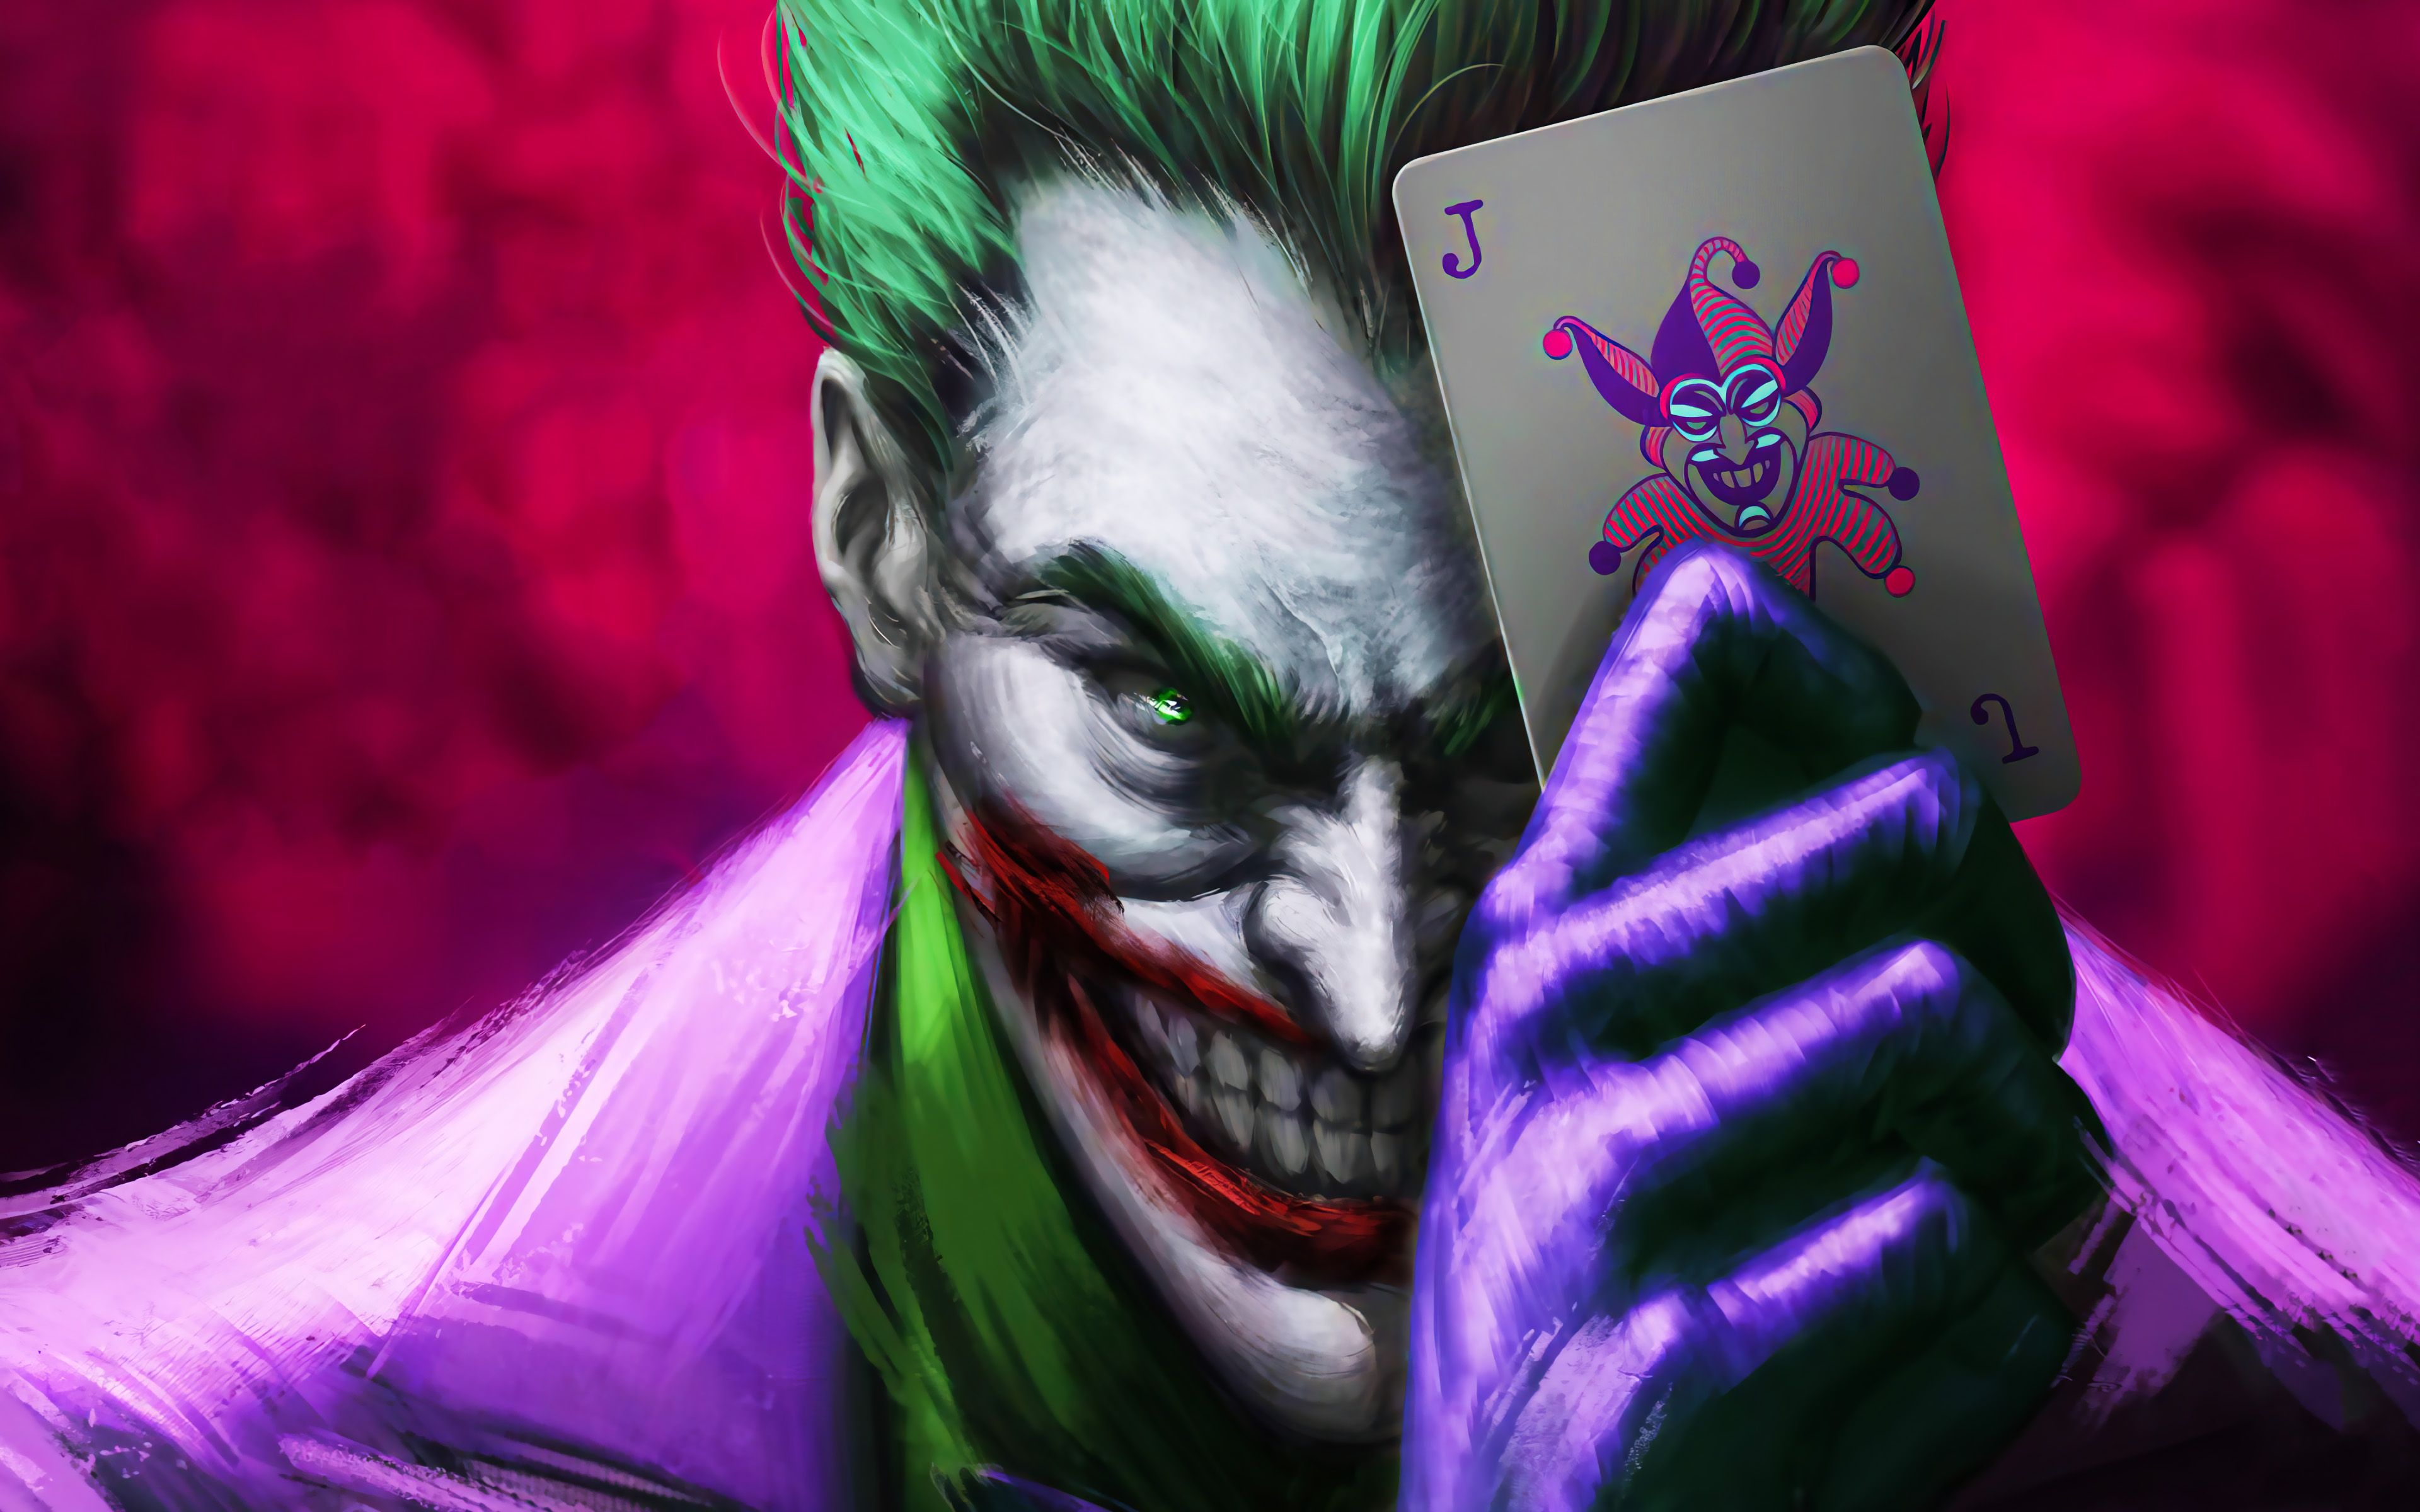 Download wallpaper Joker with card, 4k, 3D art, supervillain, fan art, Joker, playing cards, artwork, Joker 4K for desktop with resolution 3840x2400. High Quality HD picture wallpaper